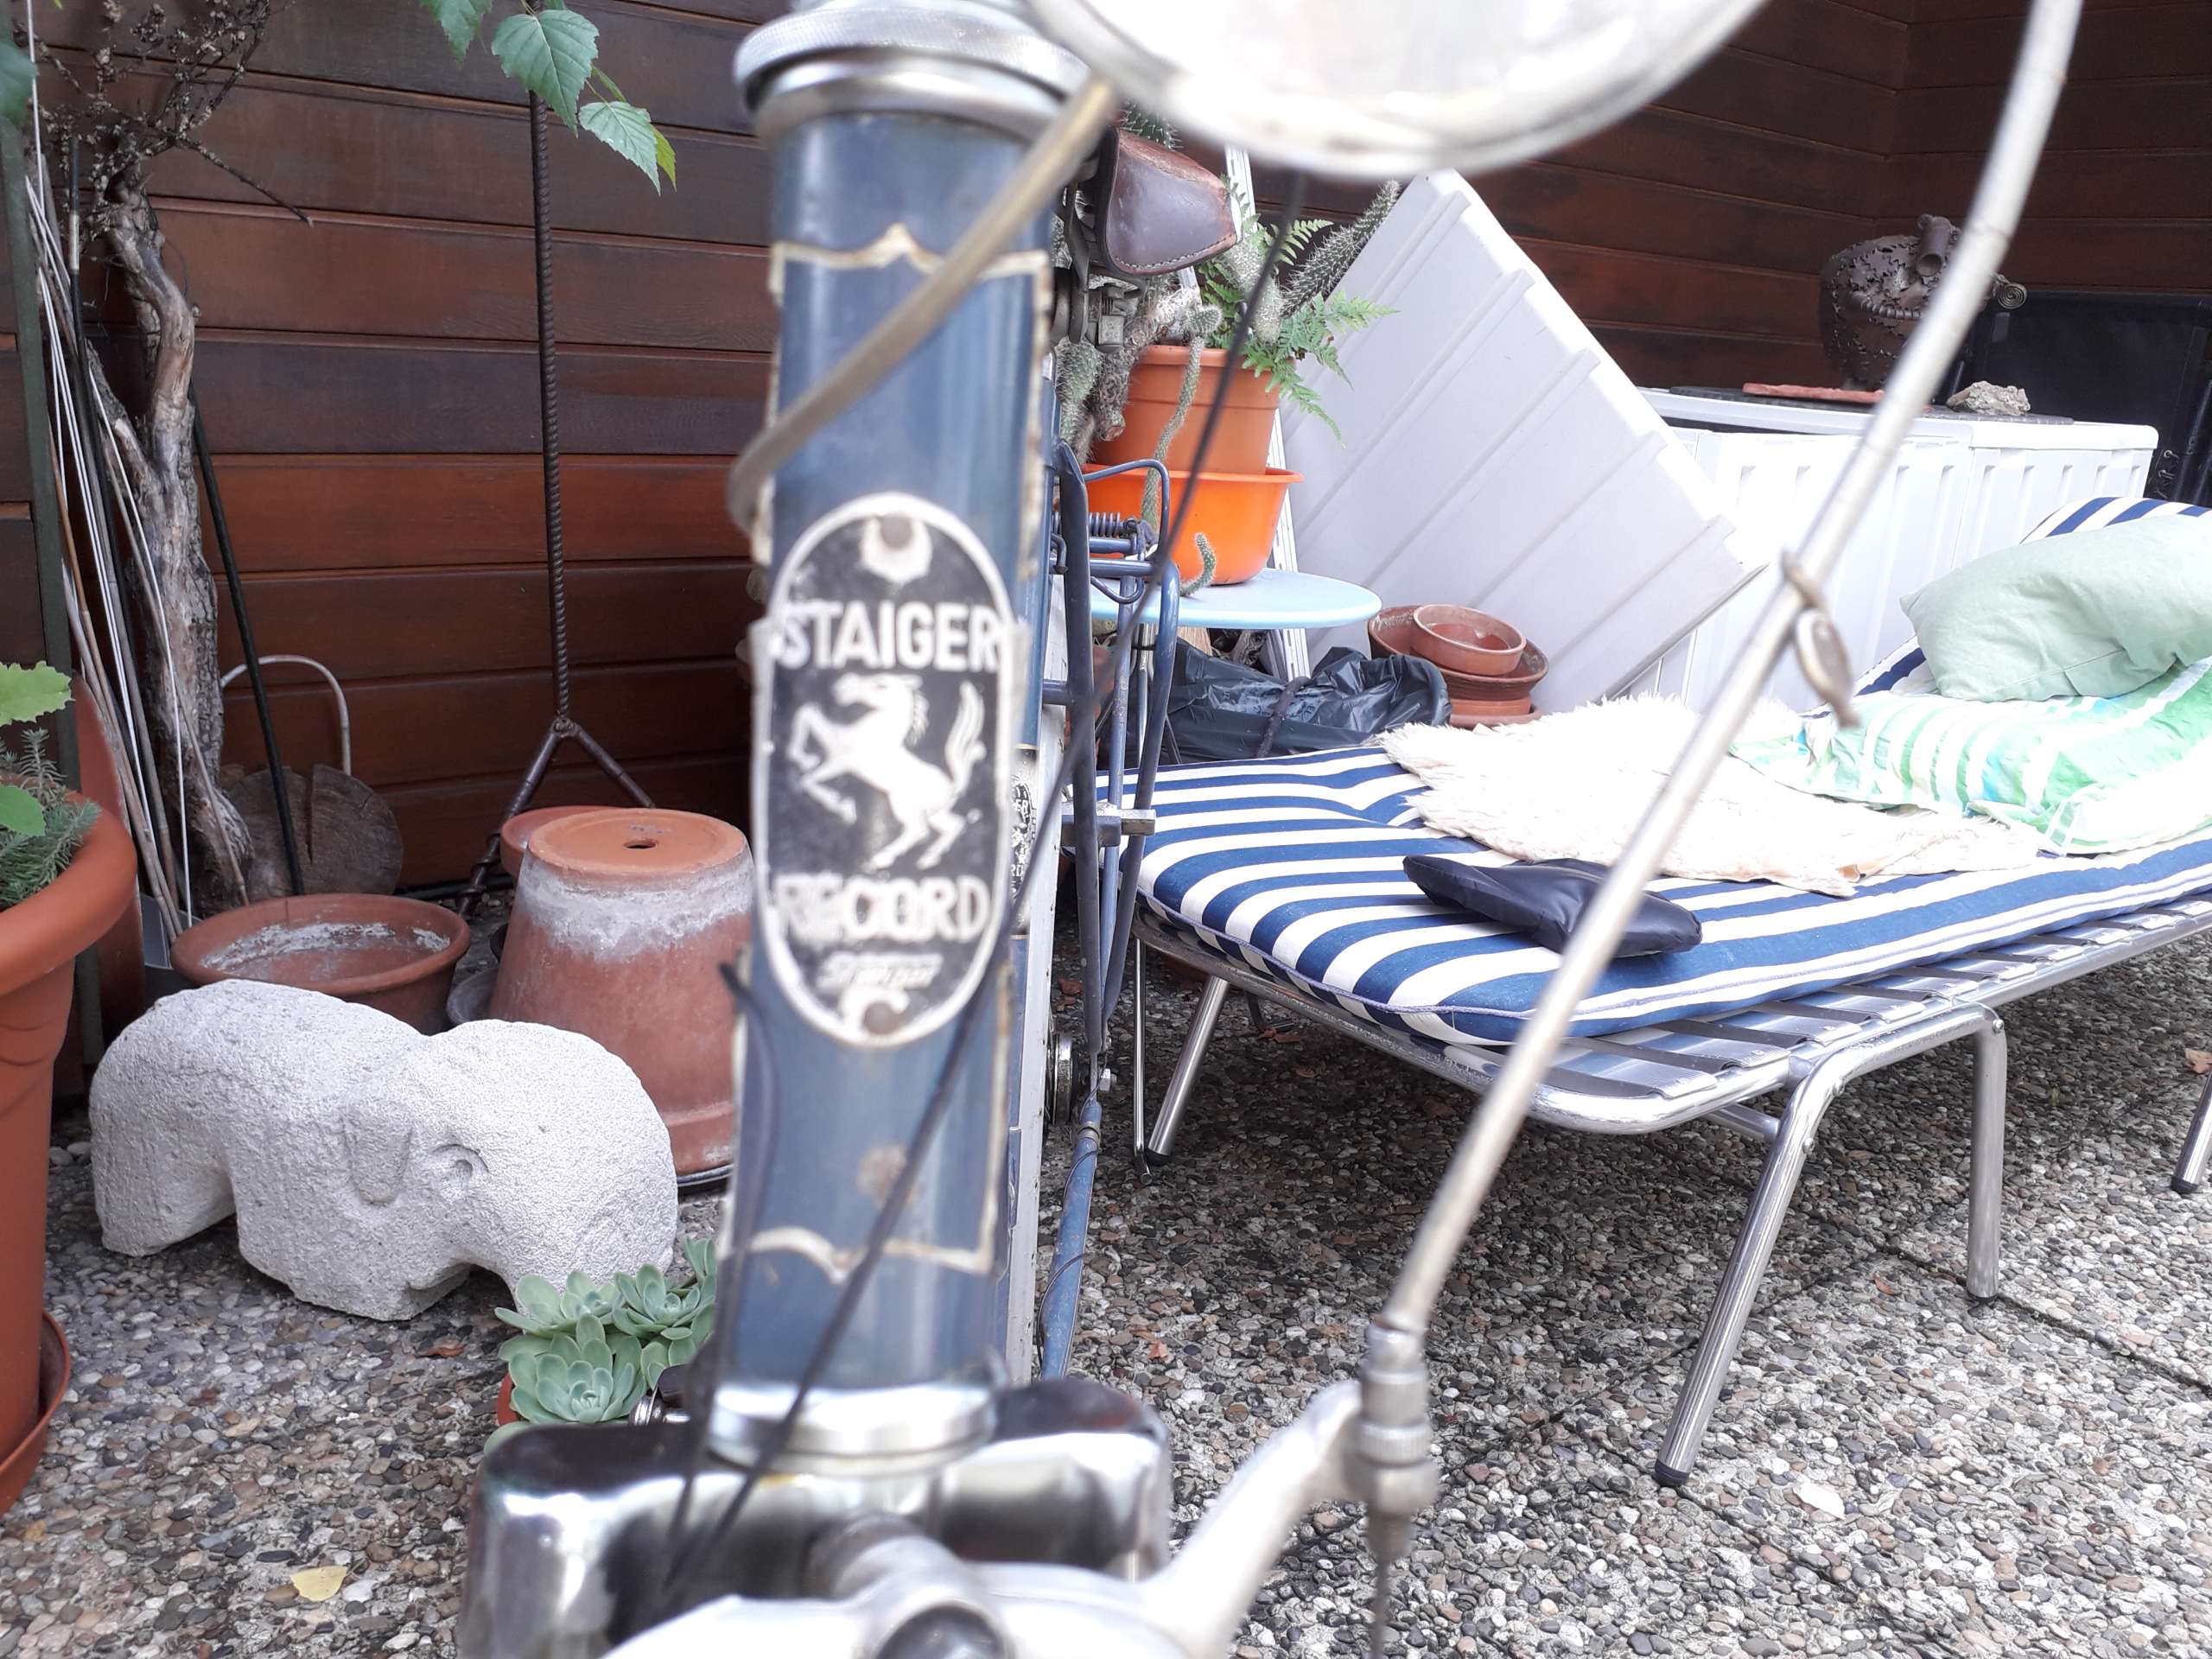 Markenzeichen Staiger des Oldtimer-Fahrrades an Vorderseite des Rahmens